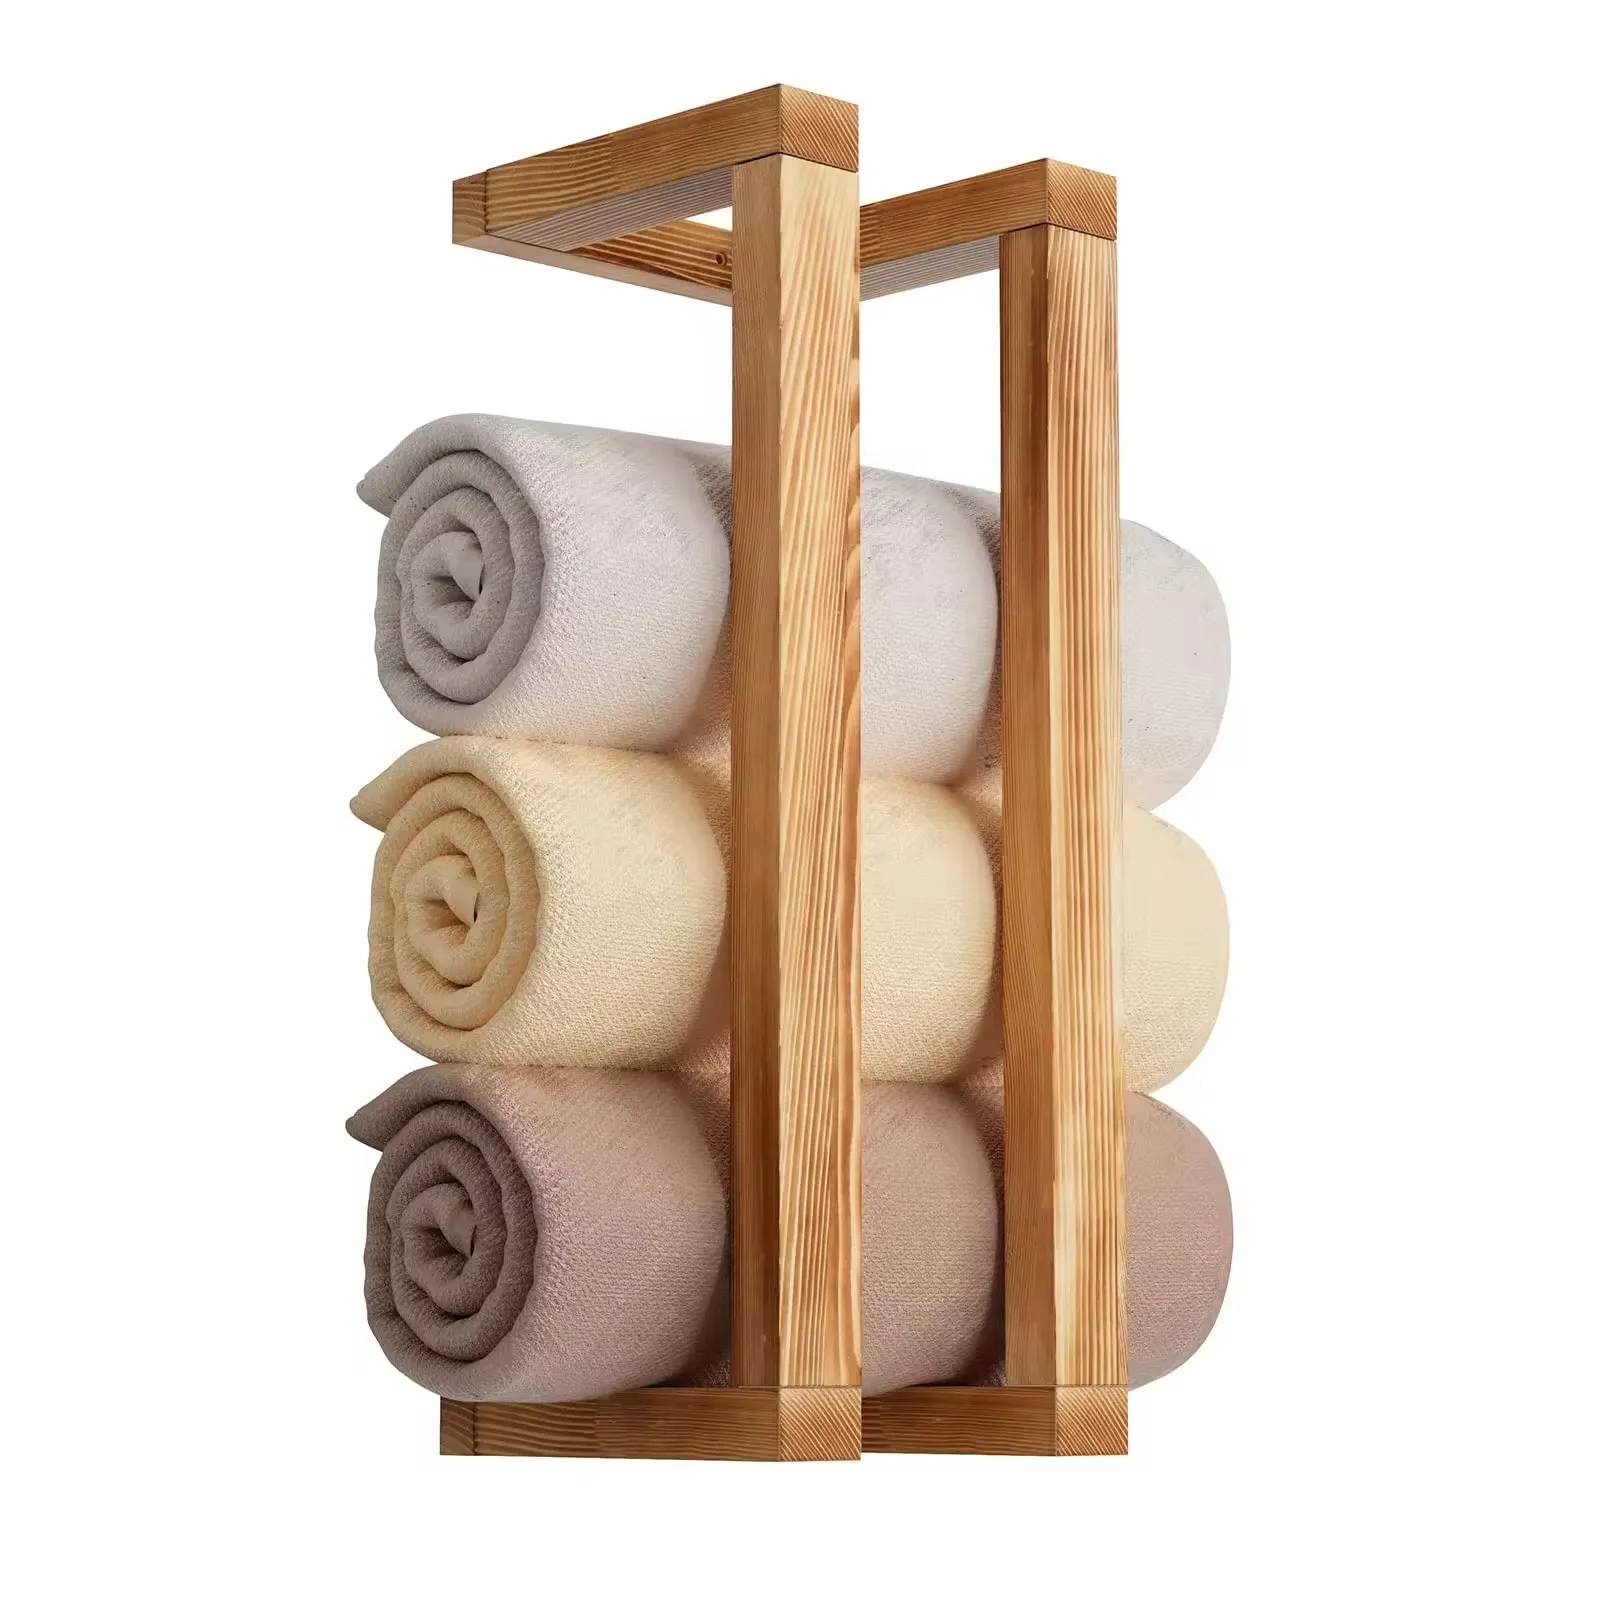 Toalheiro de madeira para banheiro, suporte de parede para toalhas, prateleira decorativa para armazenamento de cobertores organizadores